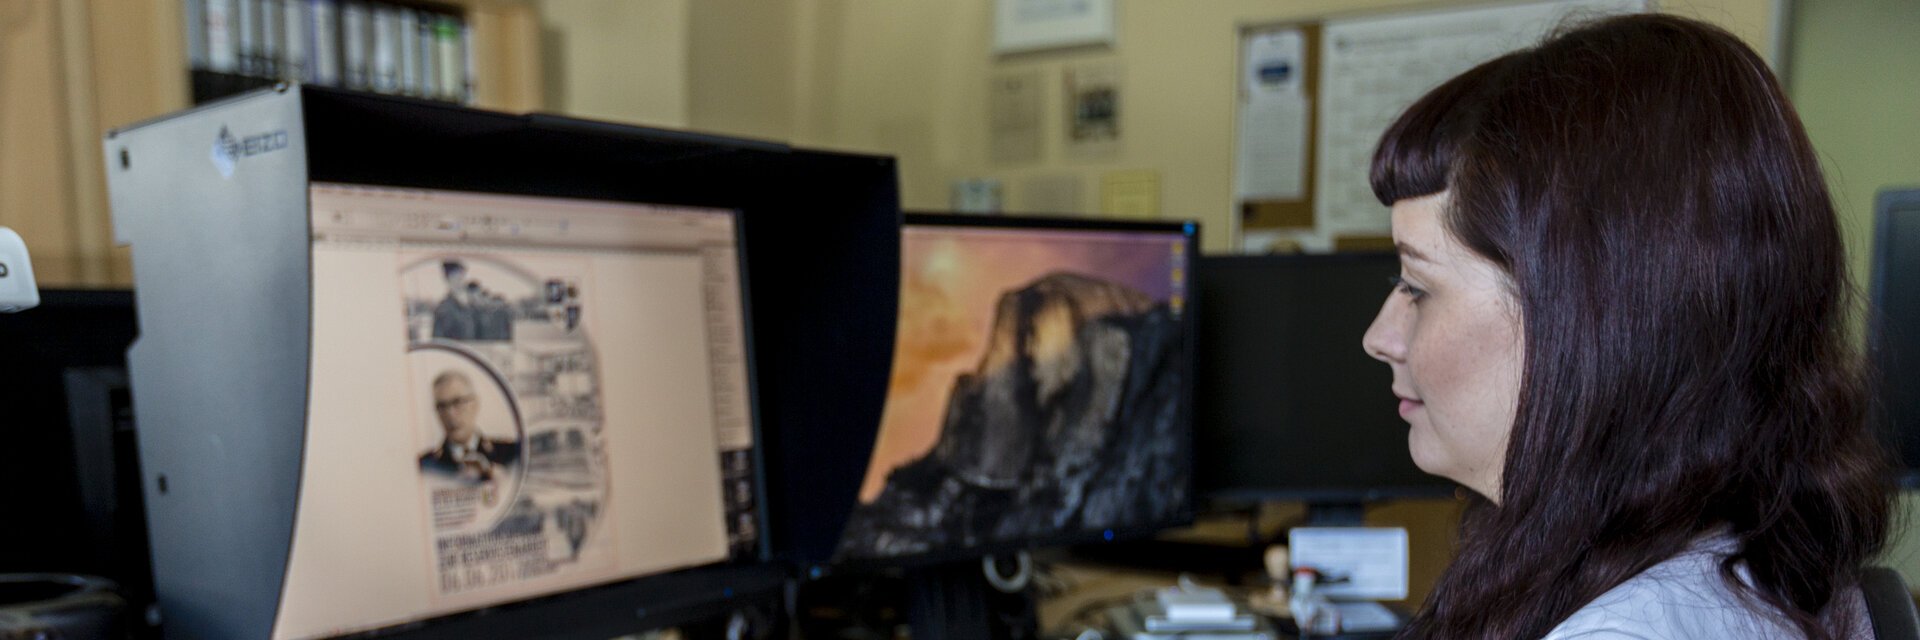 Frau sitzt vor einem Monitor und zeichnet an einem Tablet